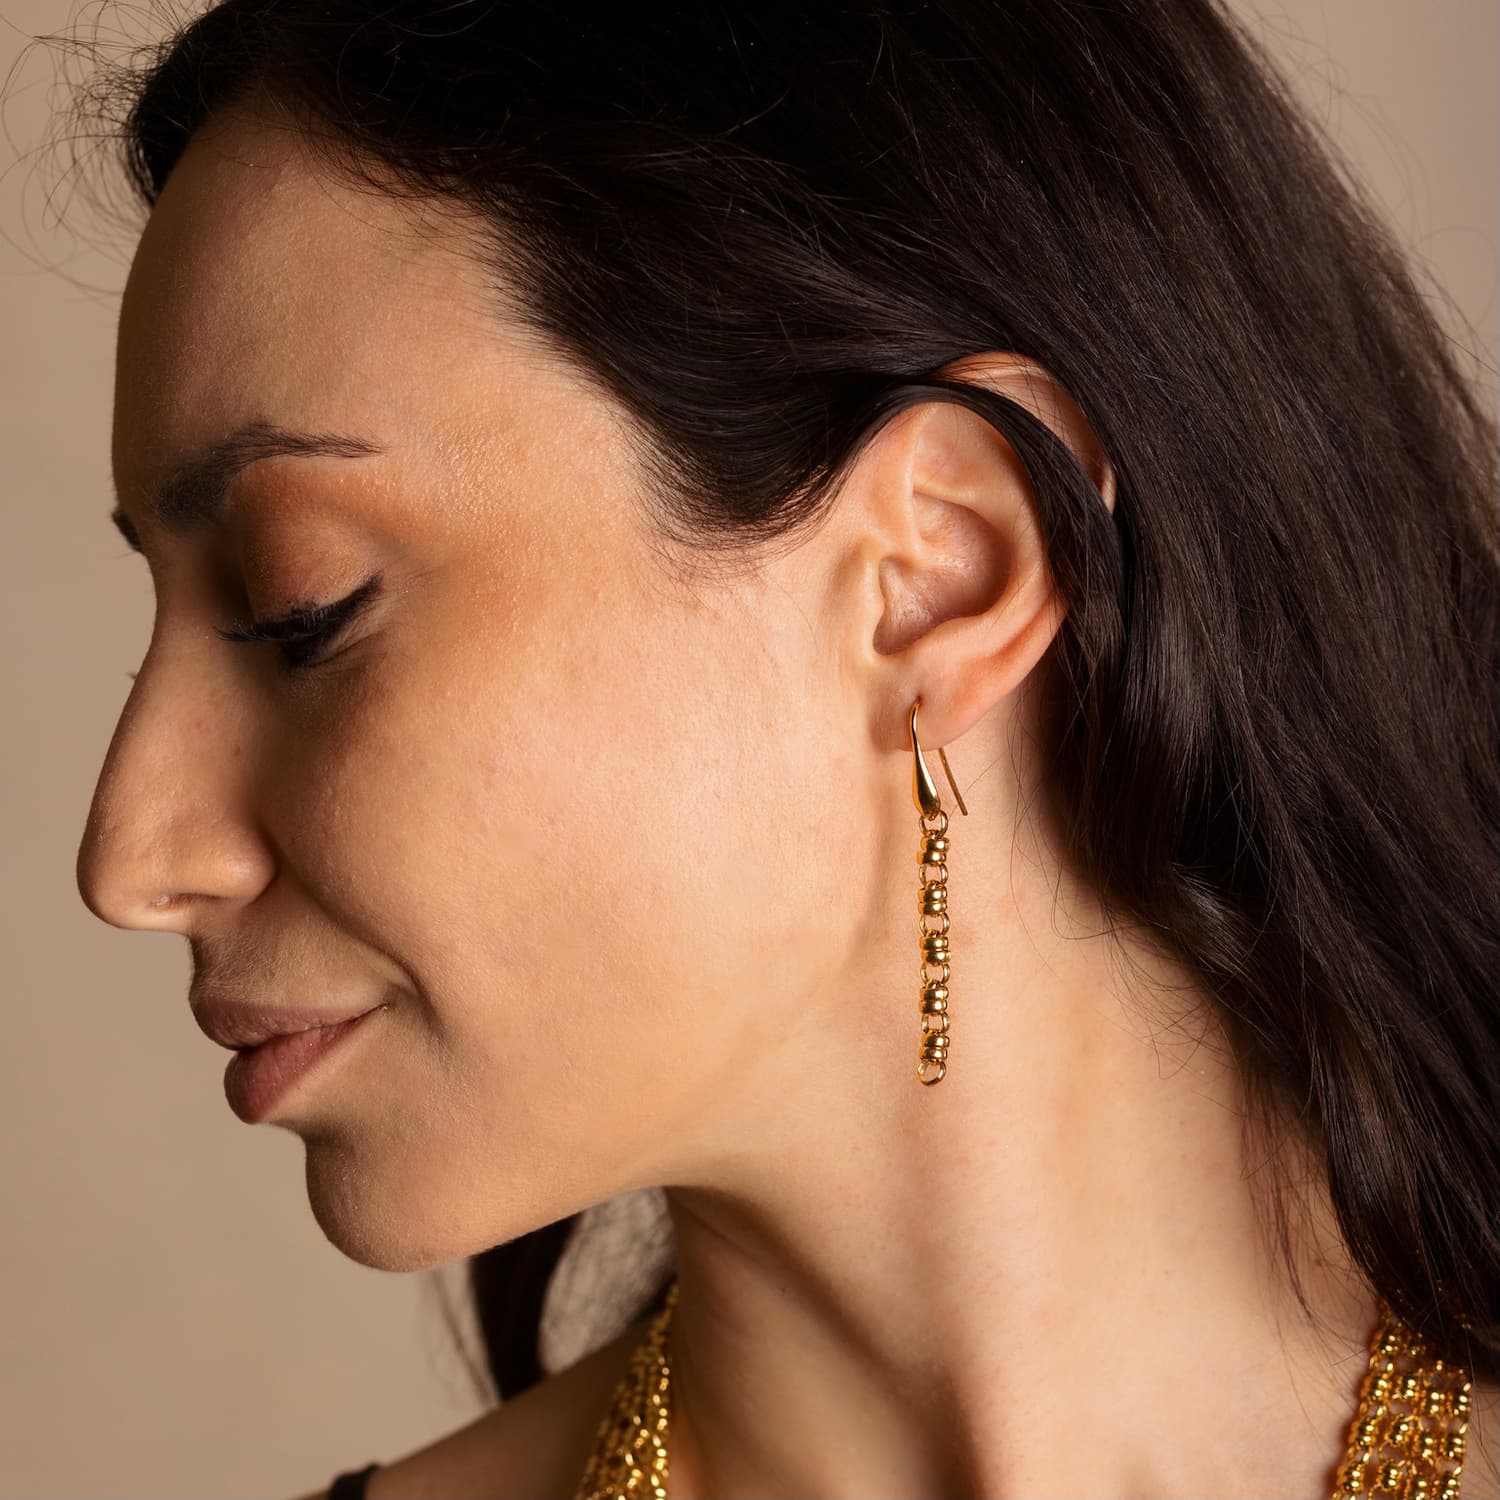 Links 5mm Earrings in Gold, Long